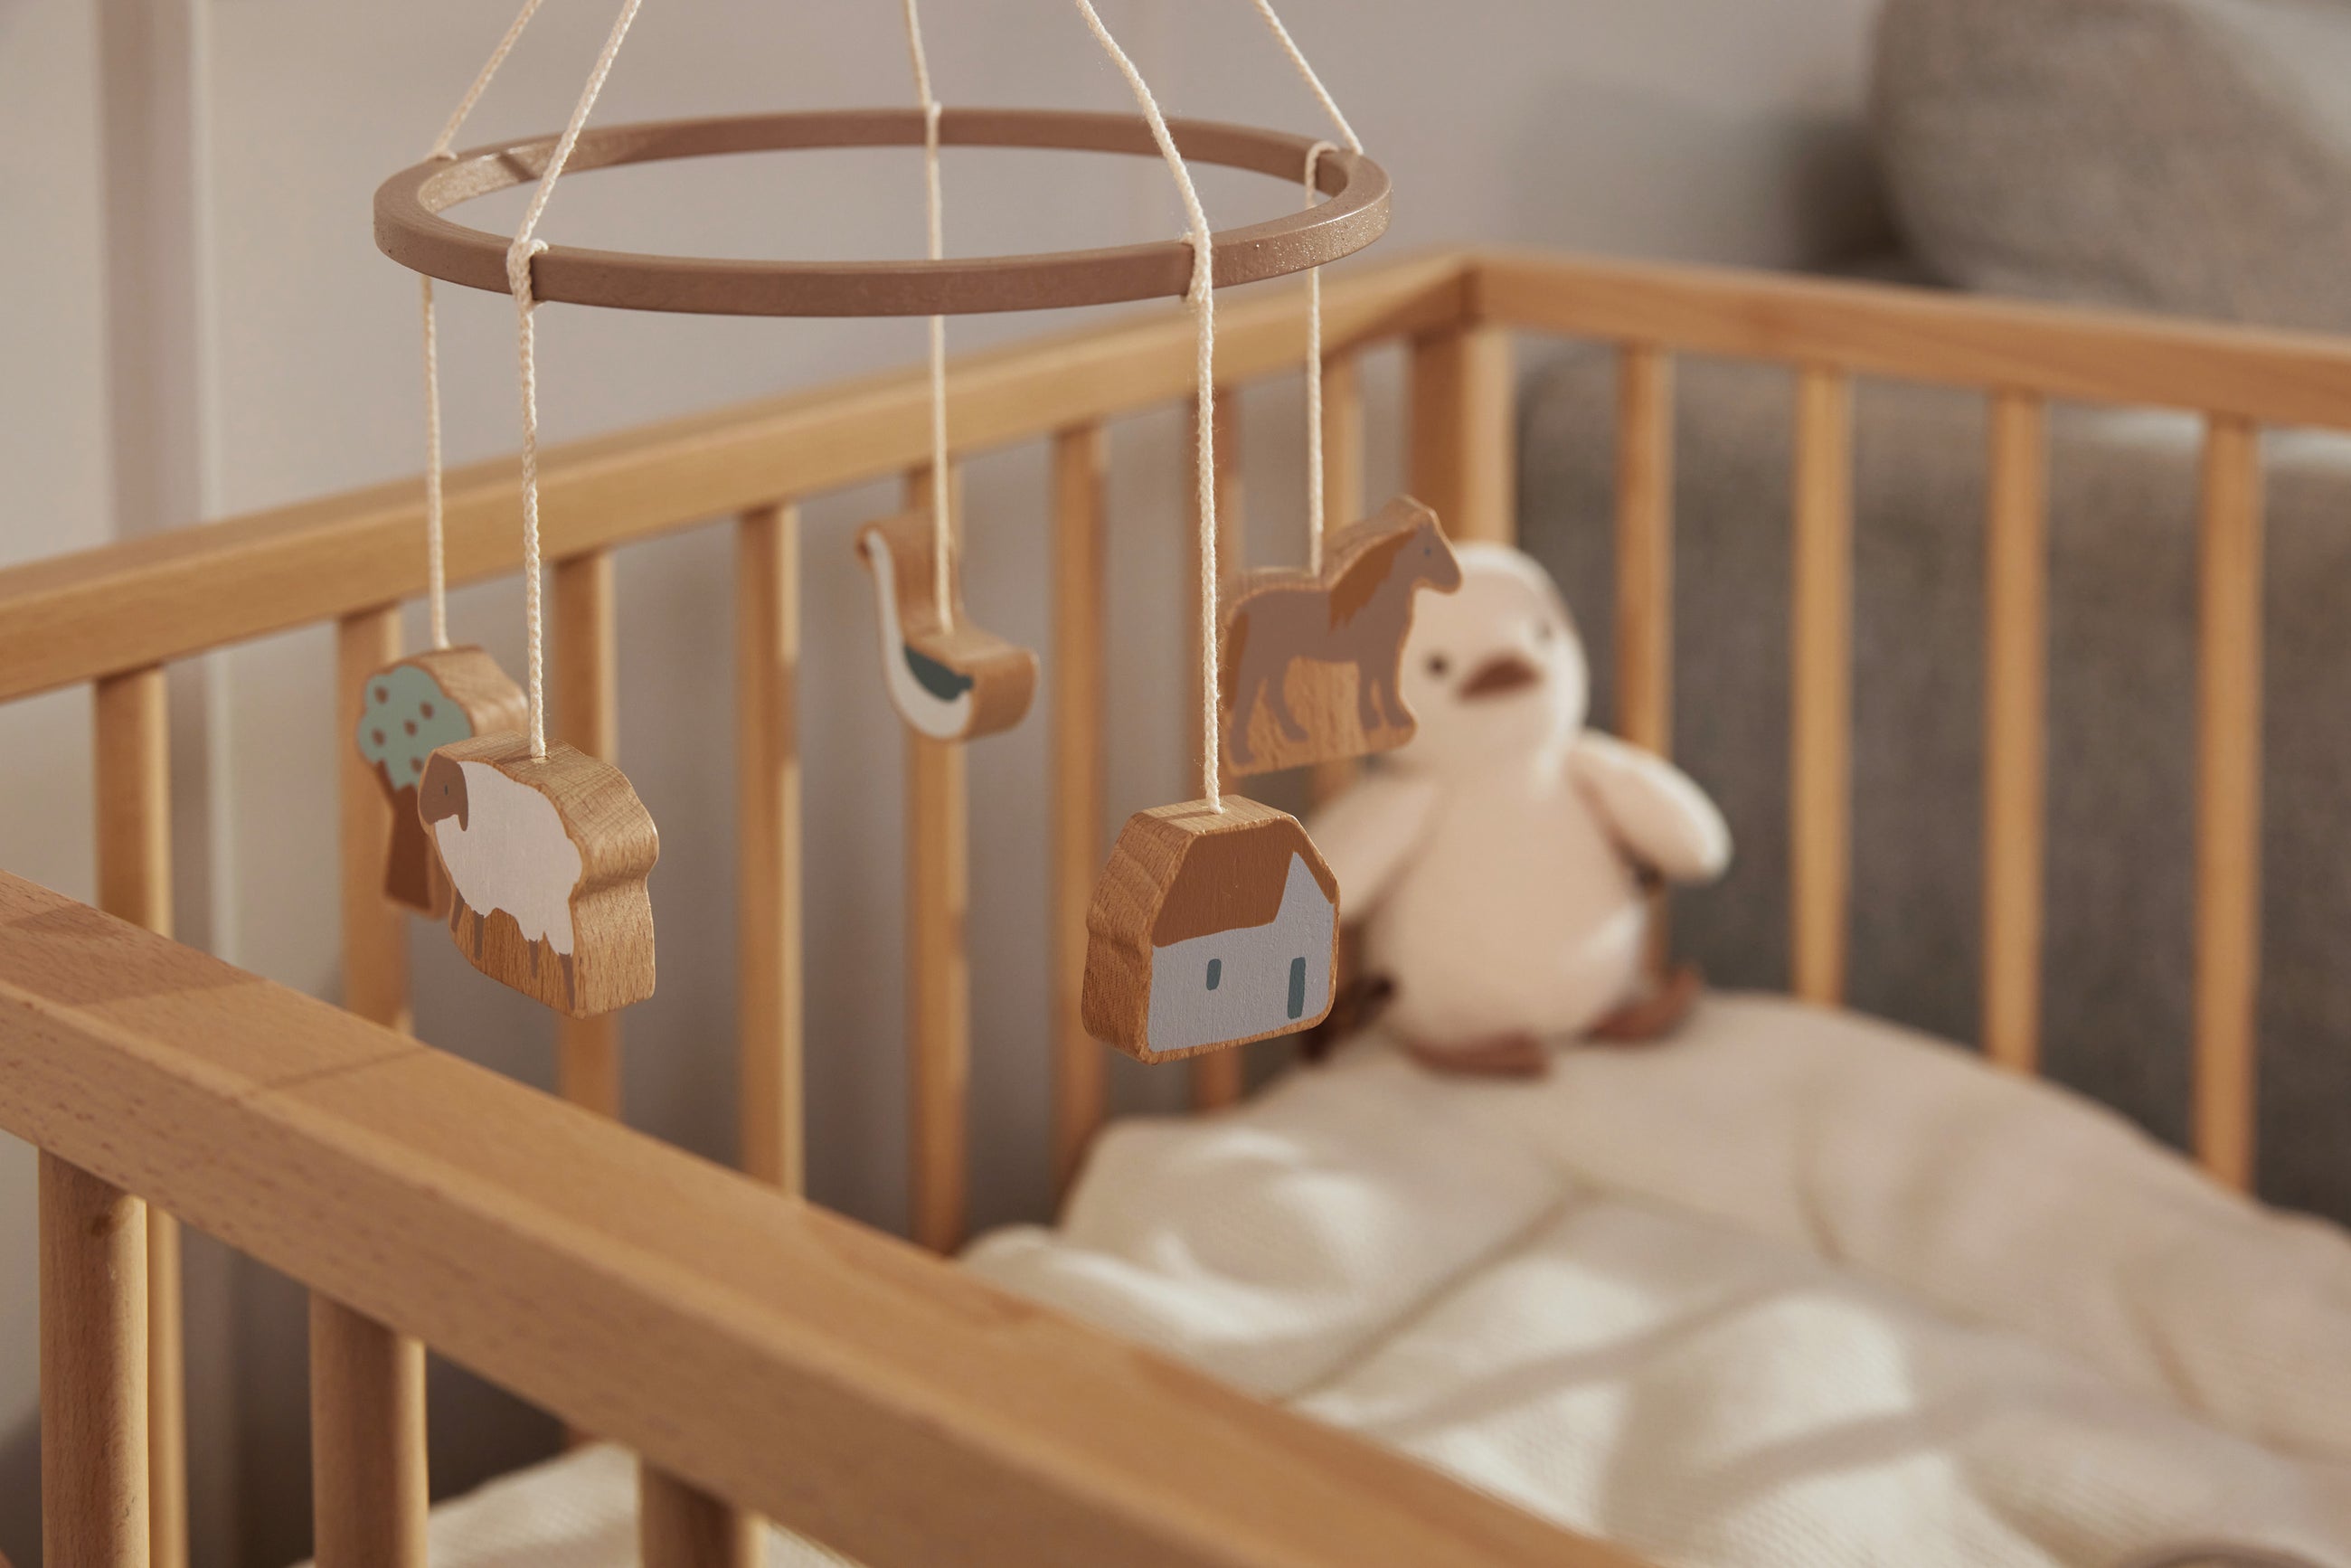 Découvrez notre collection de mobiles pour l'éveil des bébés sur Babykare.fr